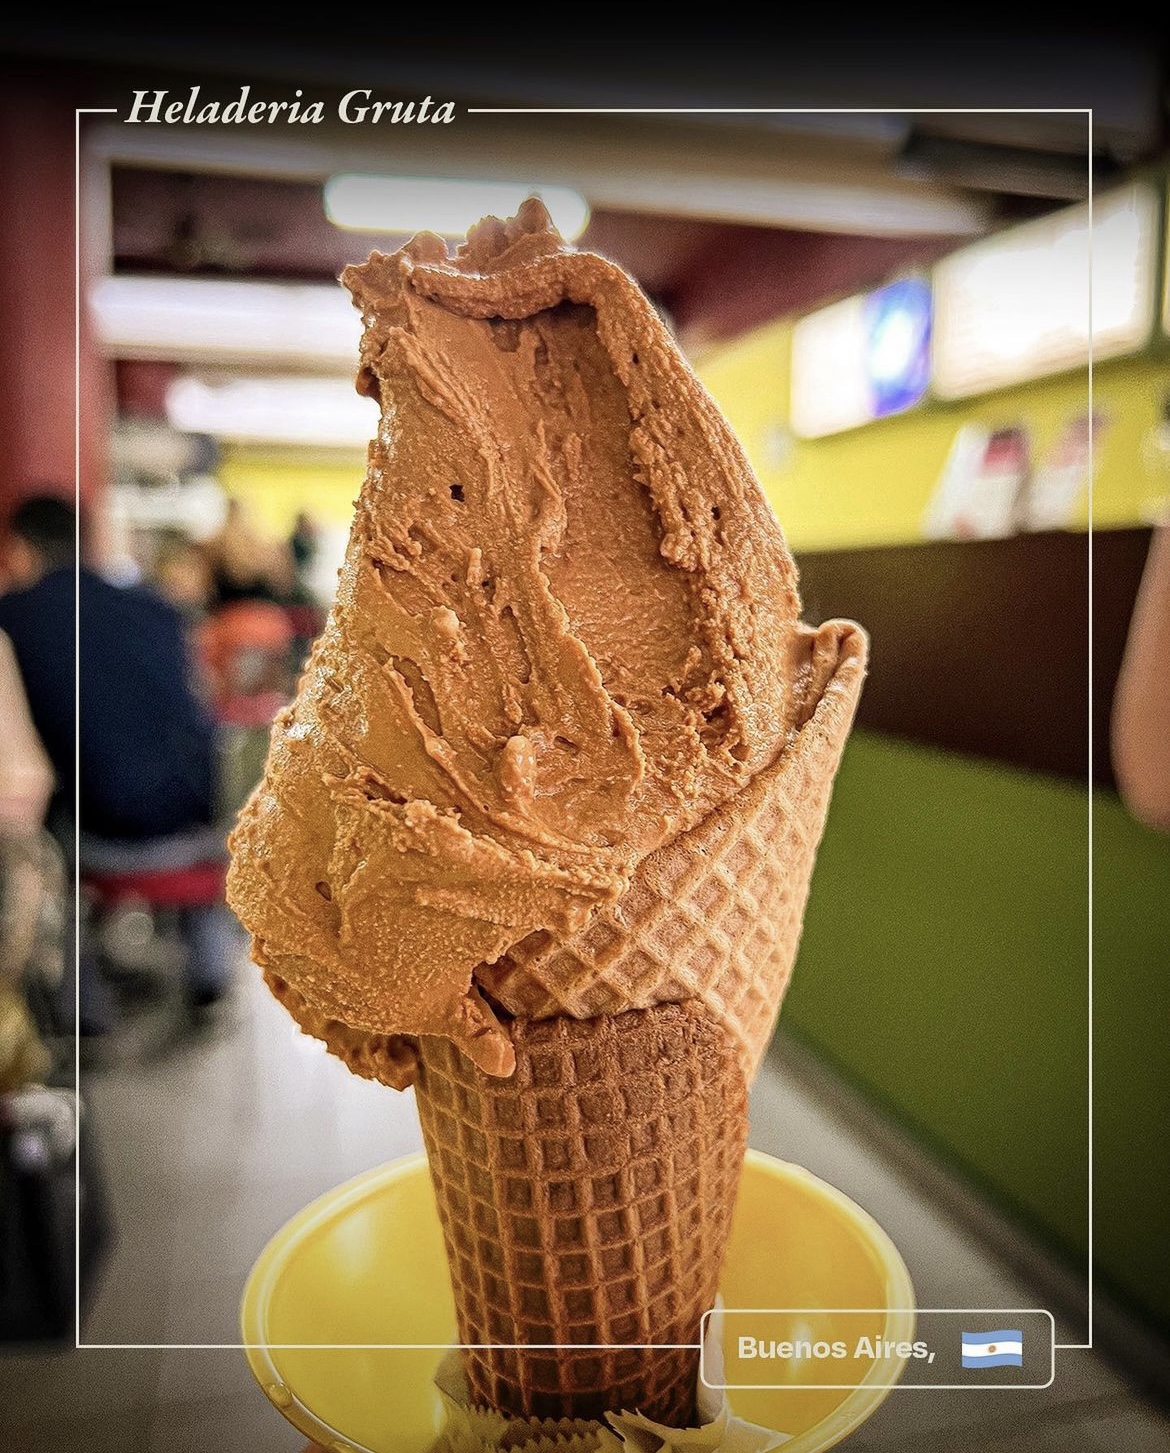 Gruta Ice-Cream cone